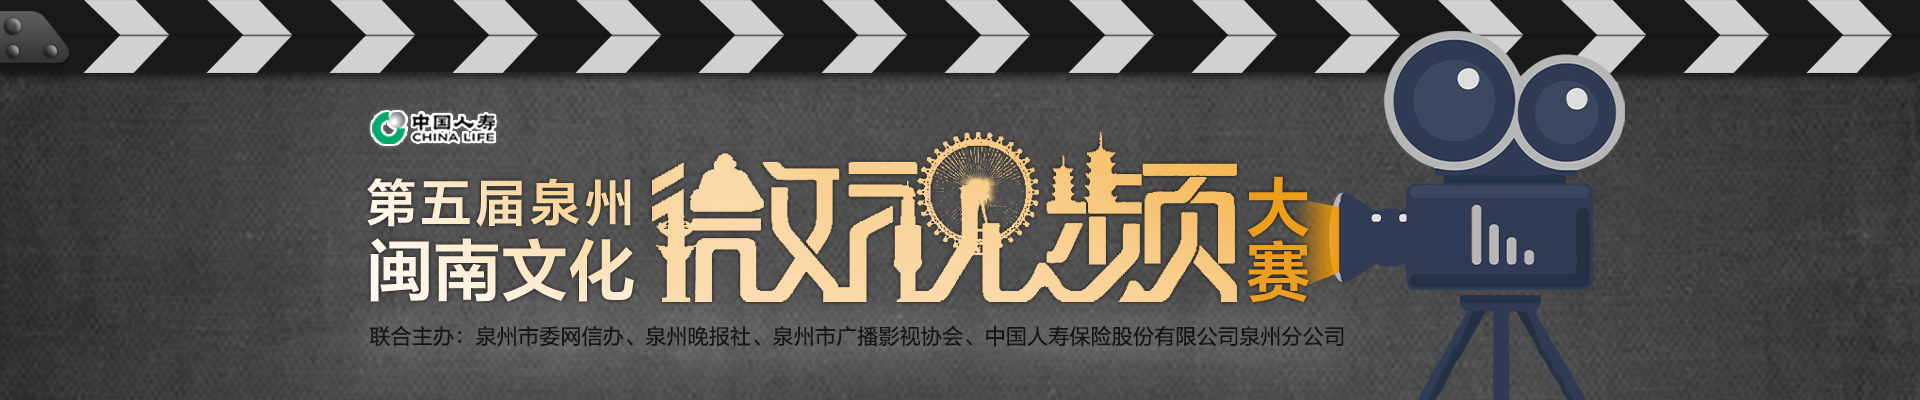 第五届泉州闽南文化微视频大赛